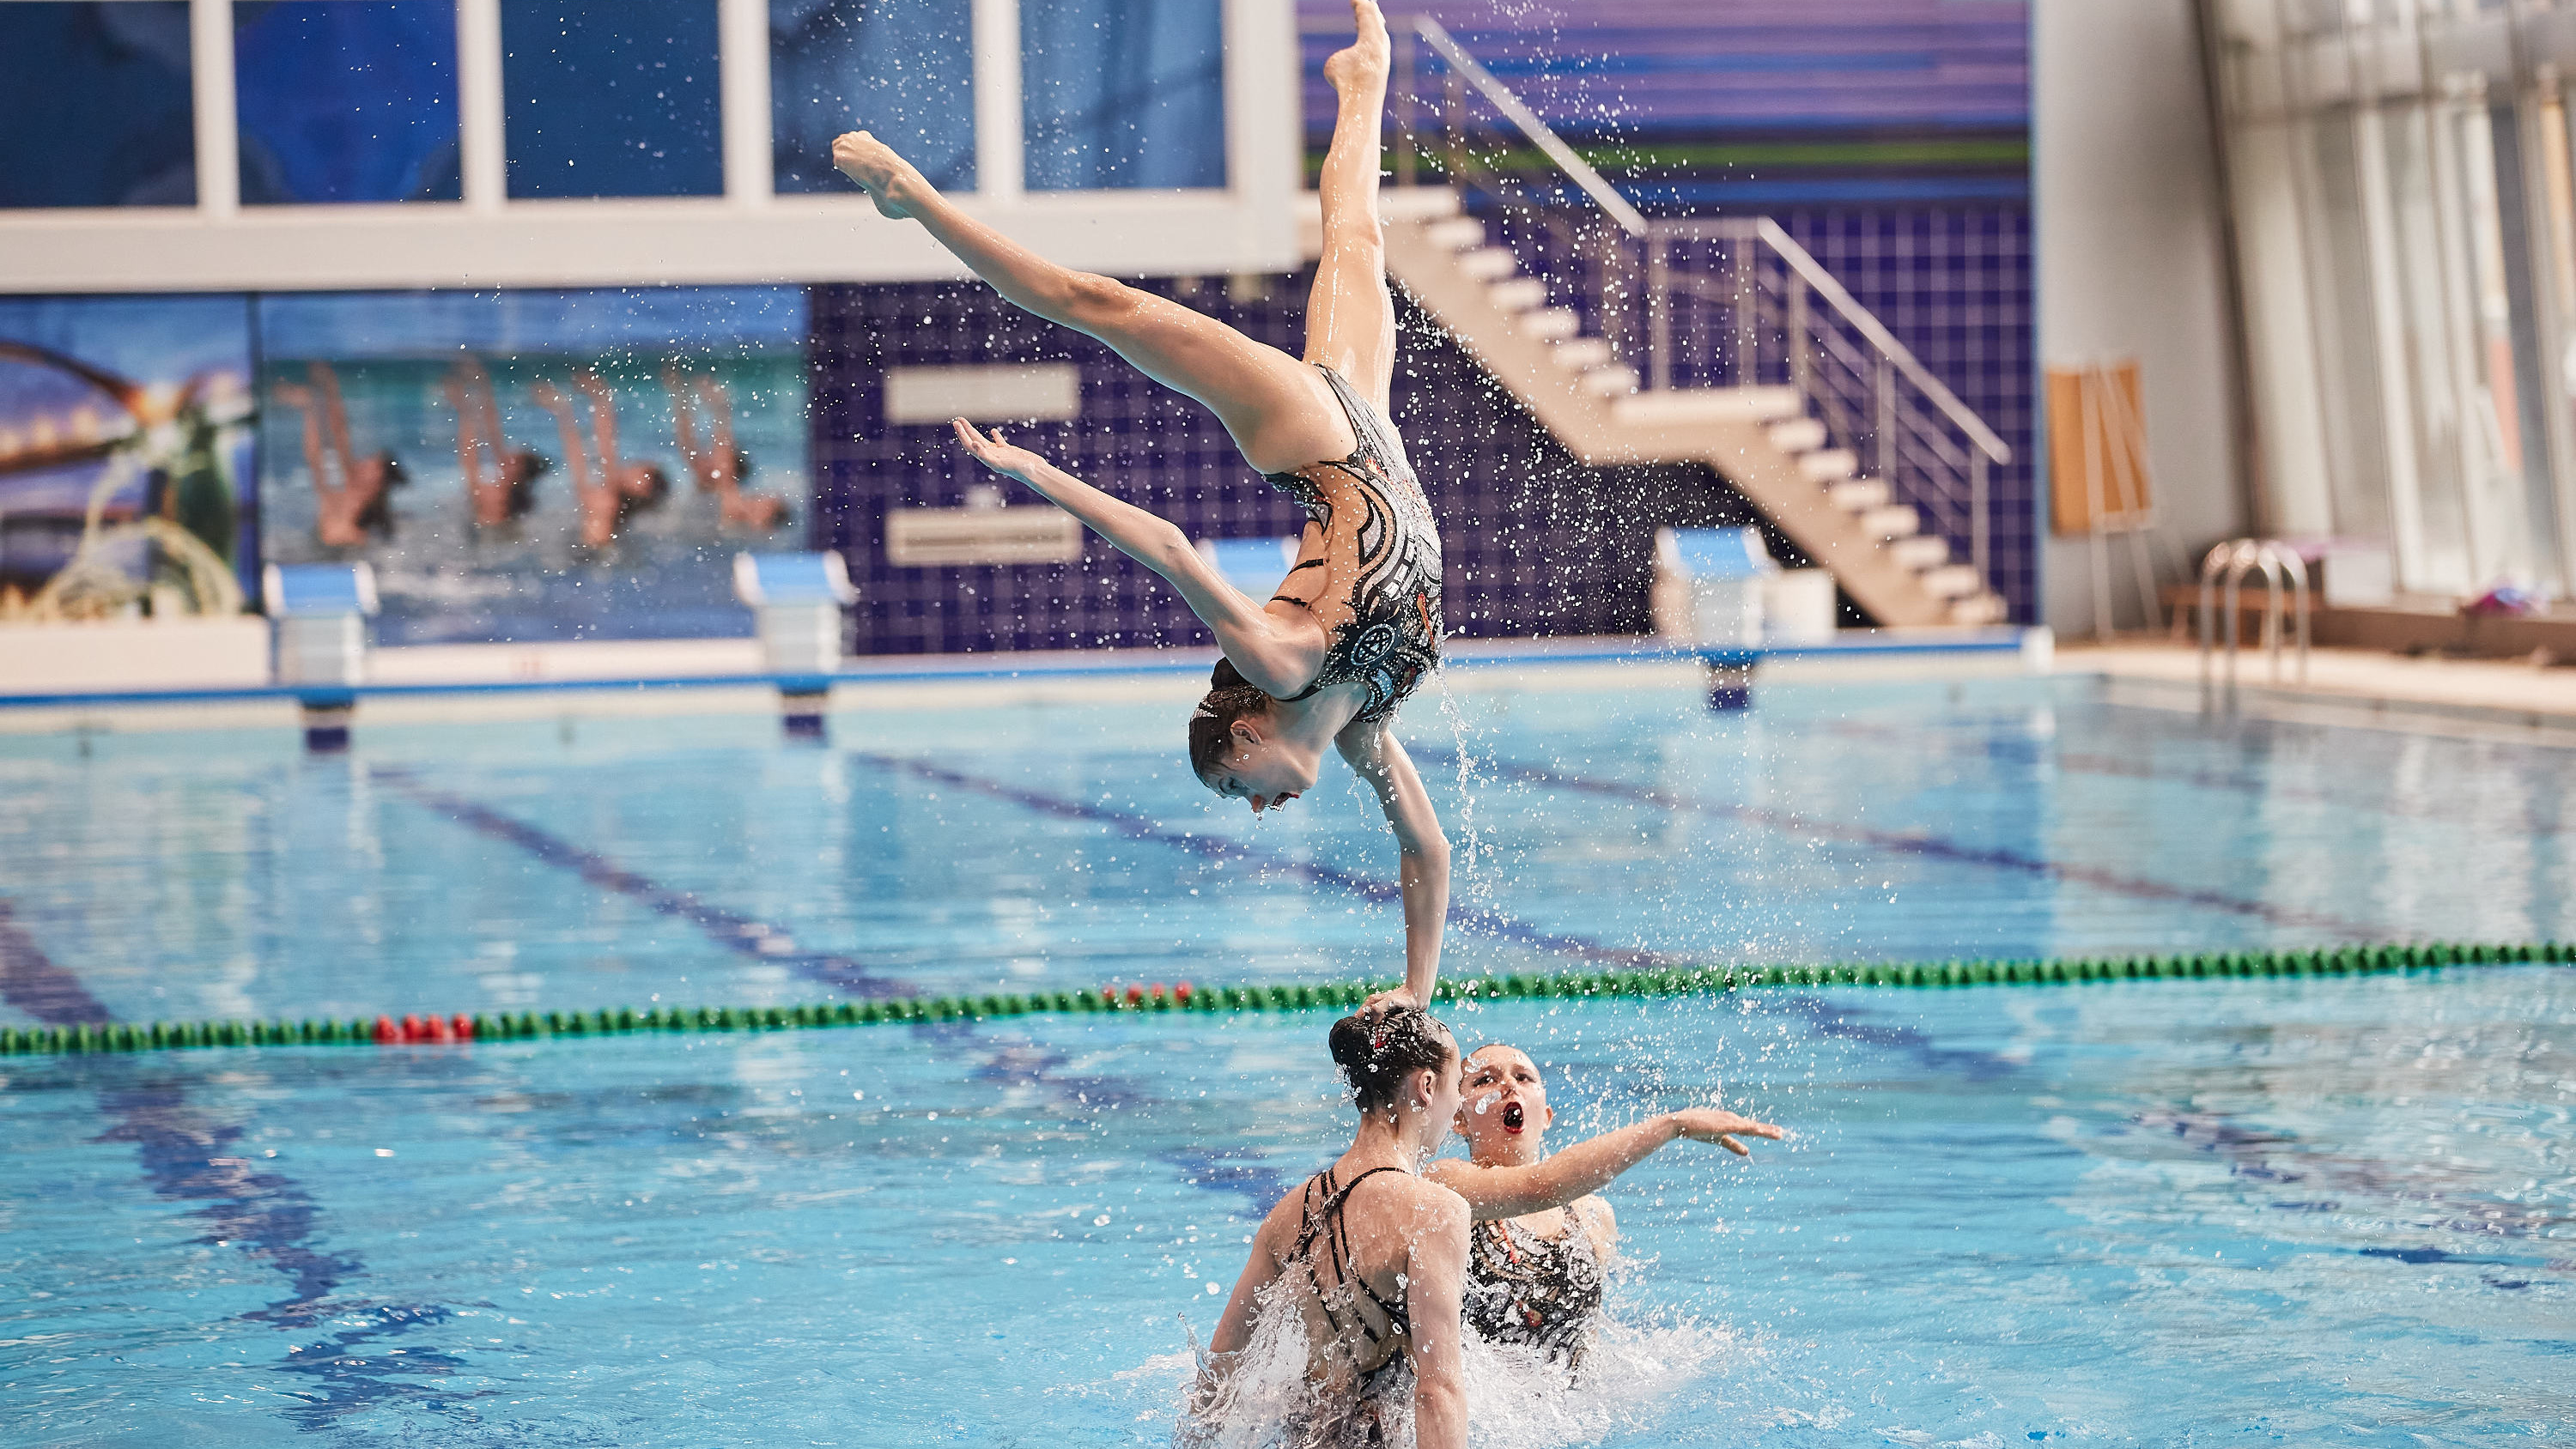 Стройные ножки, прыжки и страсть: соревнования по синхронному плаванию прошли в Новосибирске — 15 жарких фото